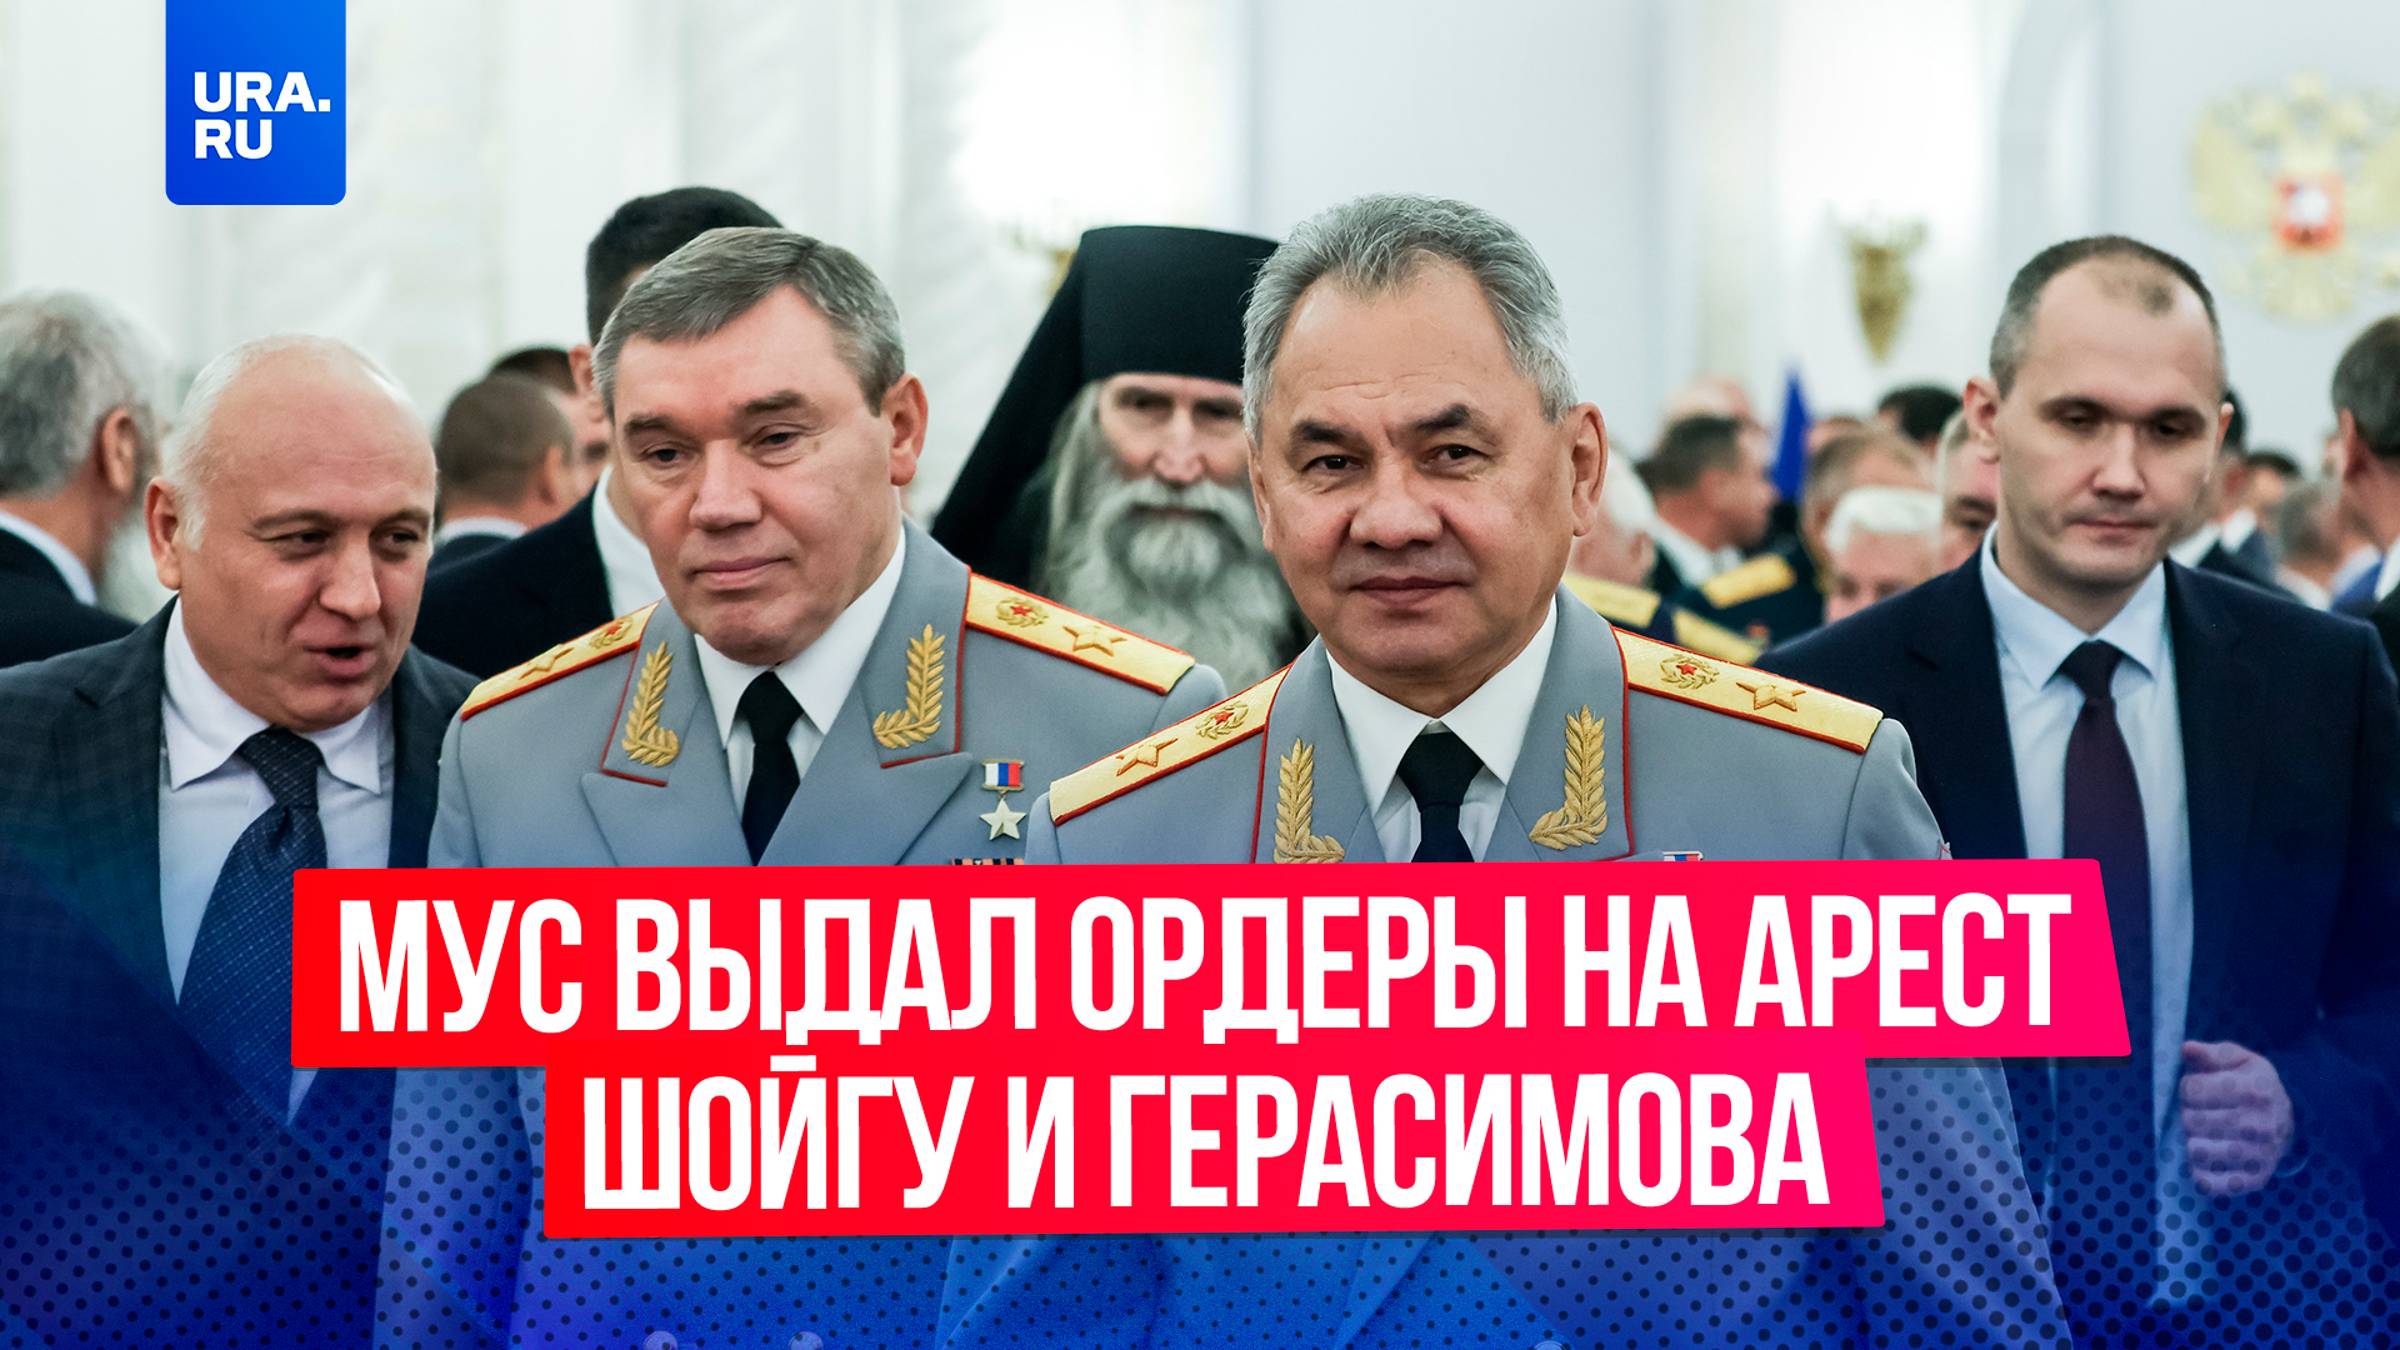 «Гибридная война против России набирает обороты»: МУС* выдал ордеры на арест Шойгу и Герасимова